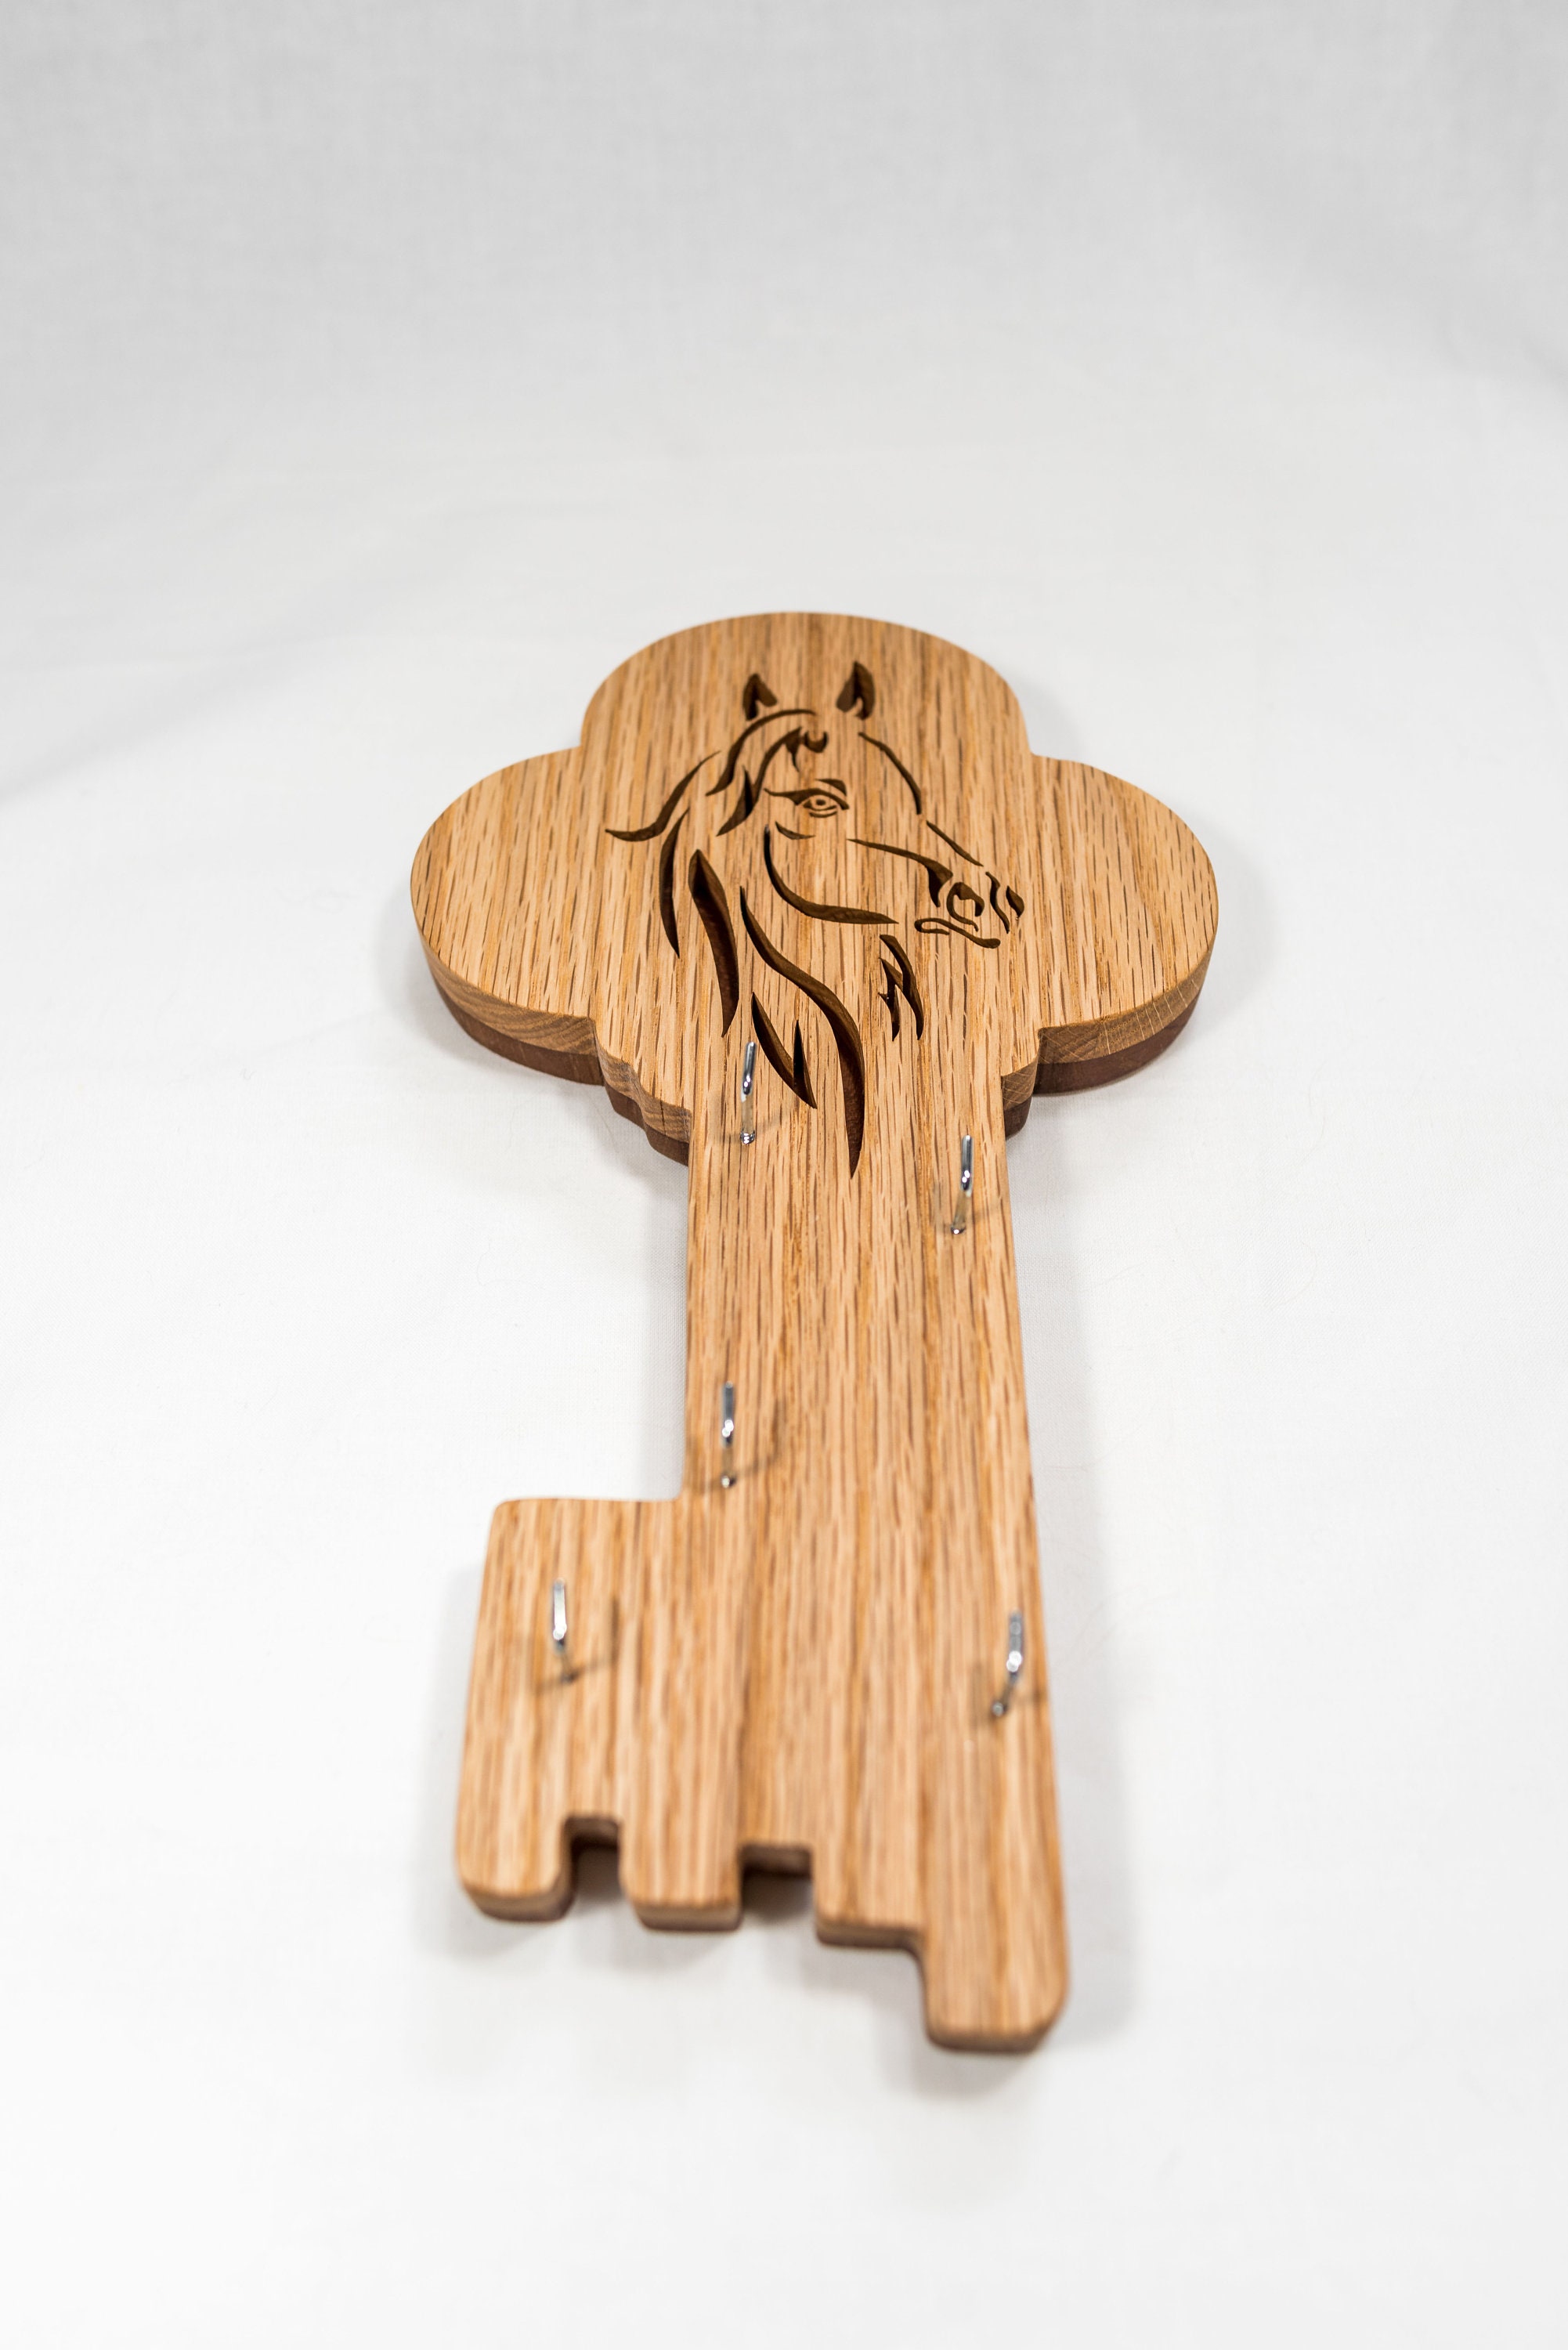 Soporte de llaves de madera de cerezo de nogal, colgador de llave único  Montaje sólido en